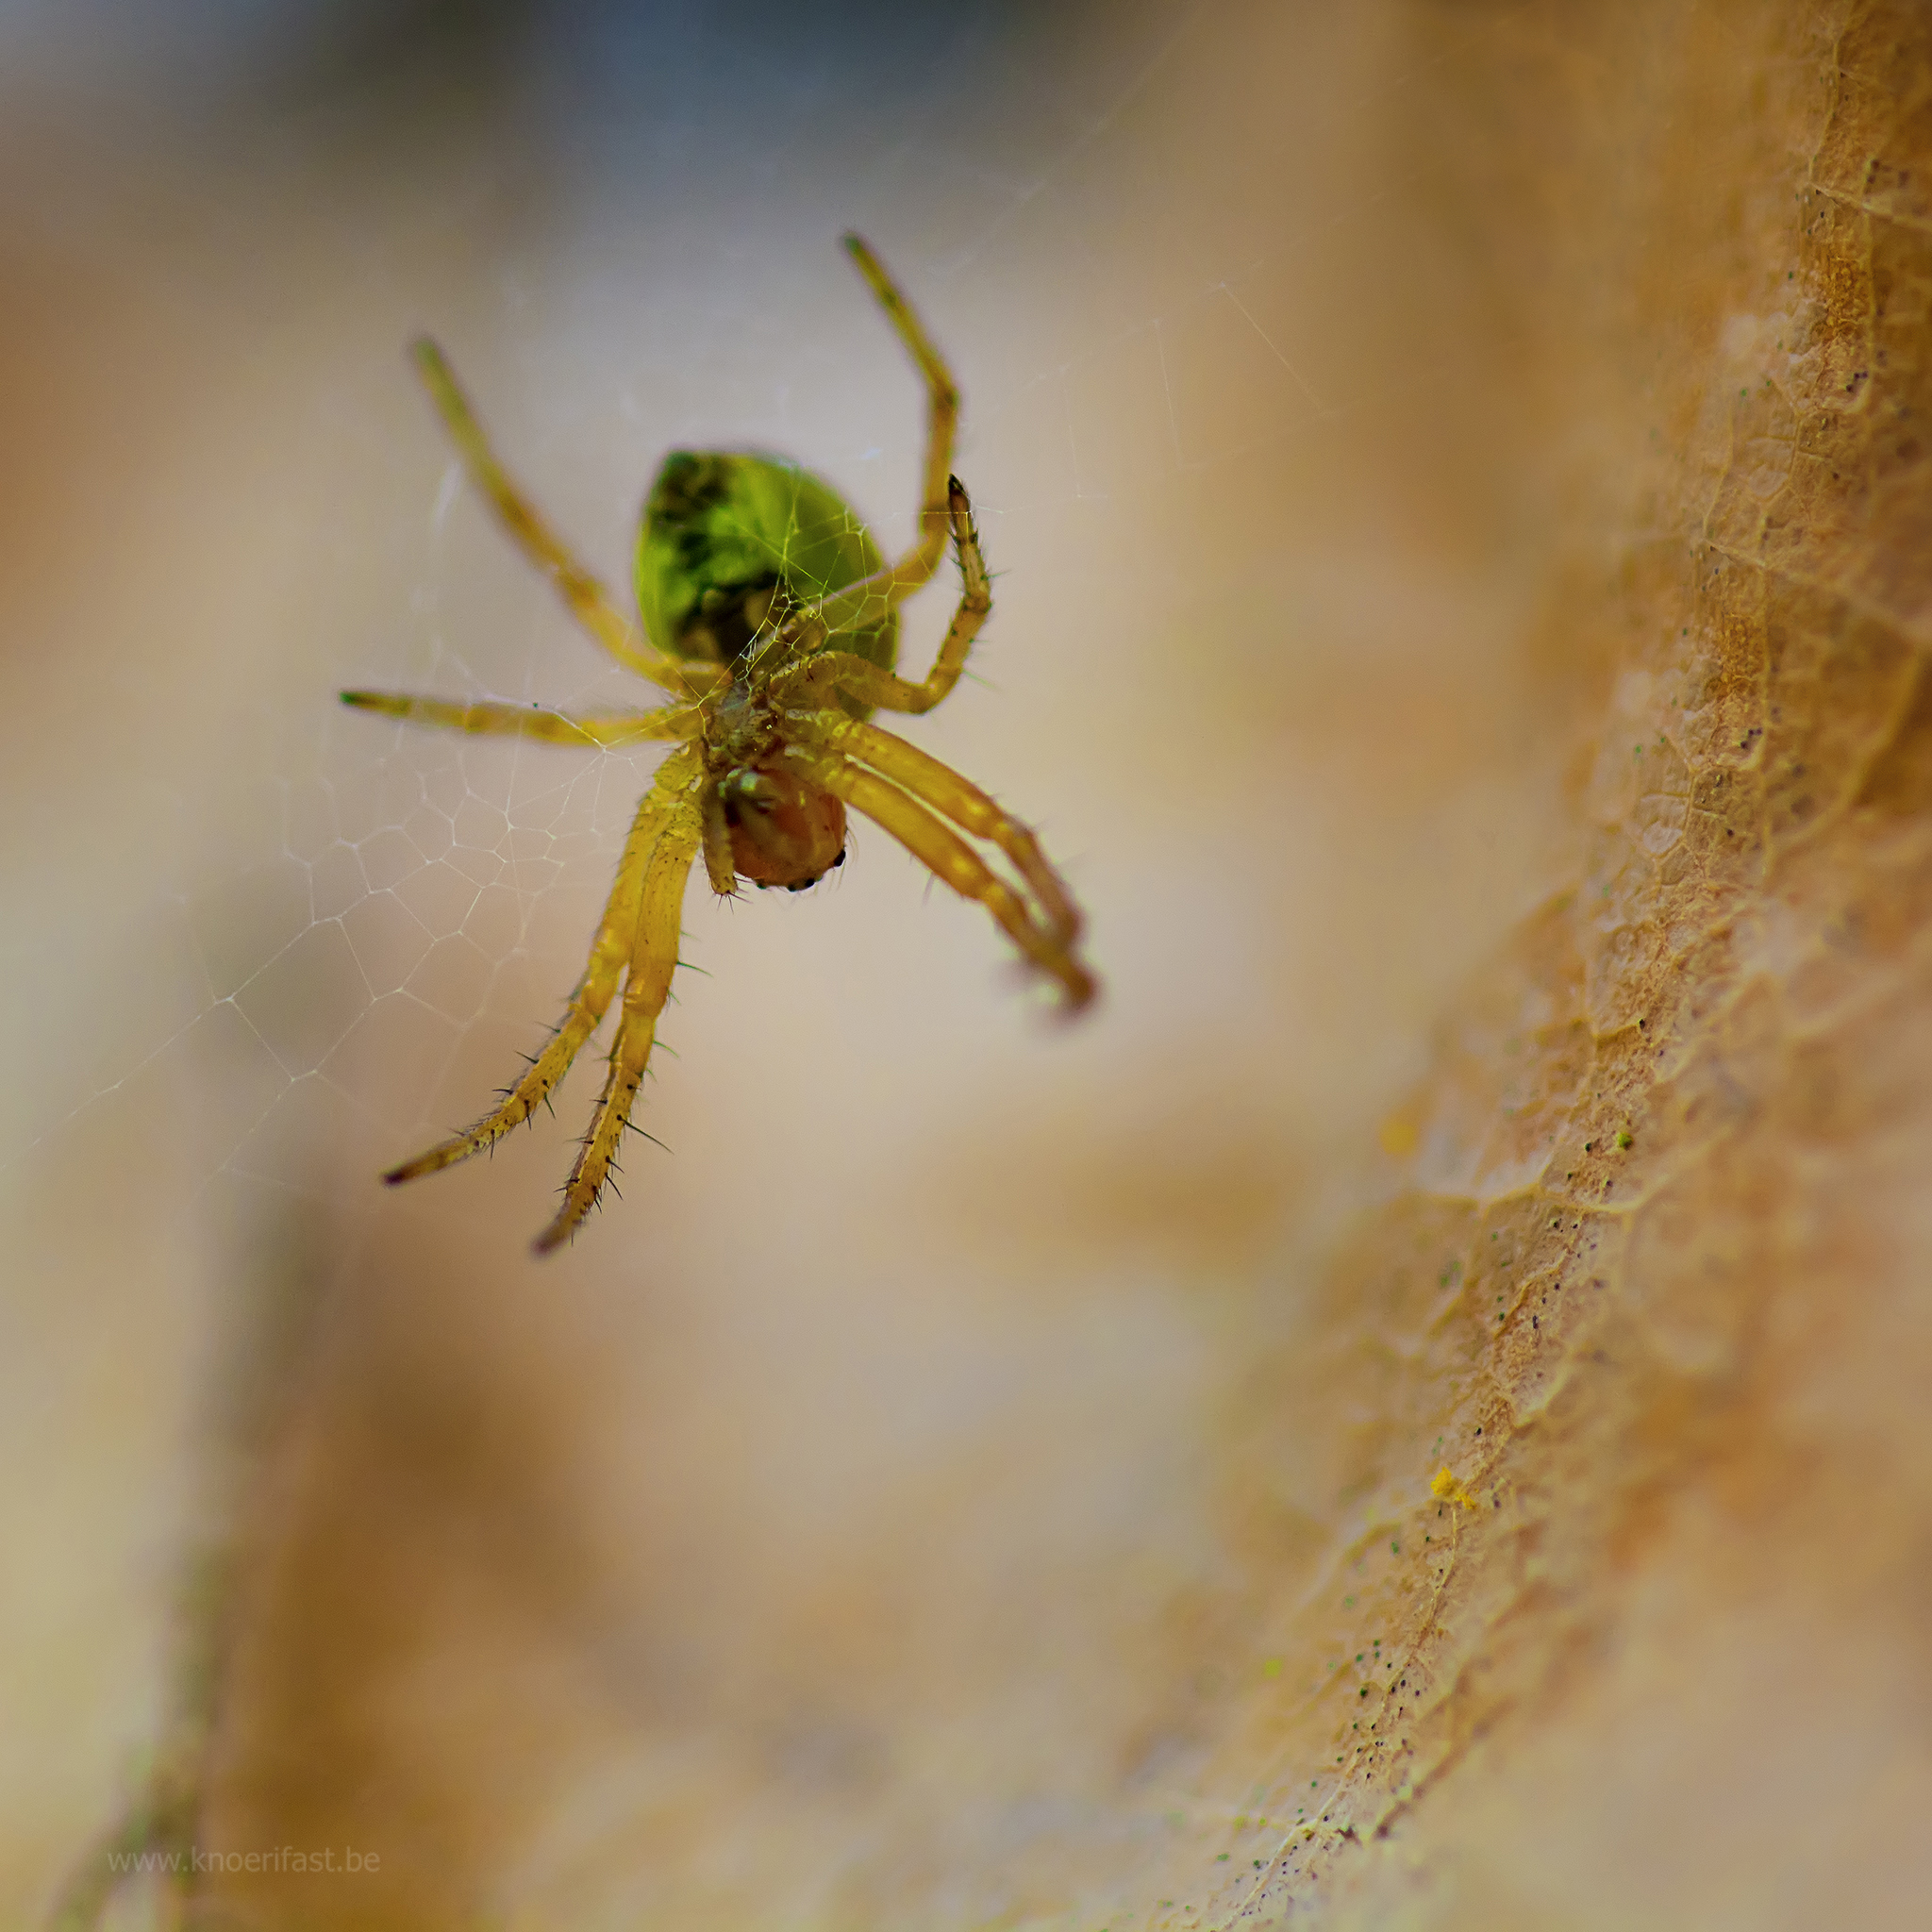  Little green spider, Nigma Walckenaeri ...